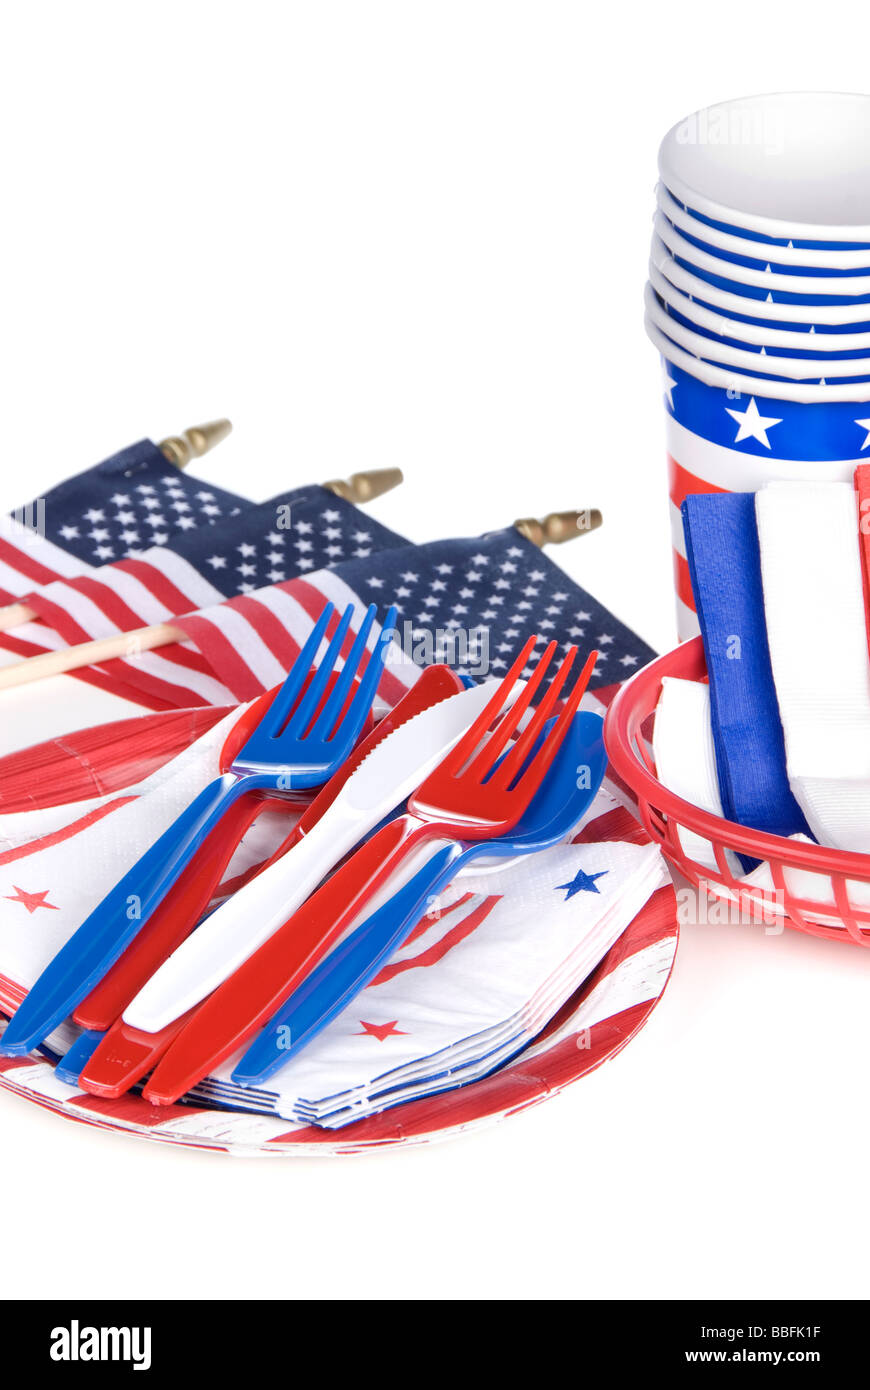 Quatrième juillet ustensiles patriotique dont le plastique Couteaux Fourchettes cuillères et tasses assiettes serviettes sur un fond blanc Banque D'Images